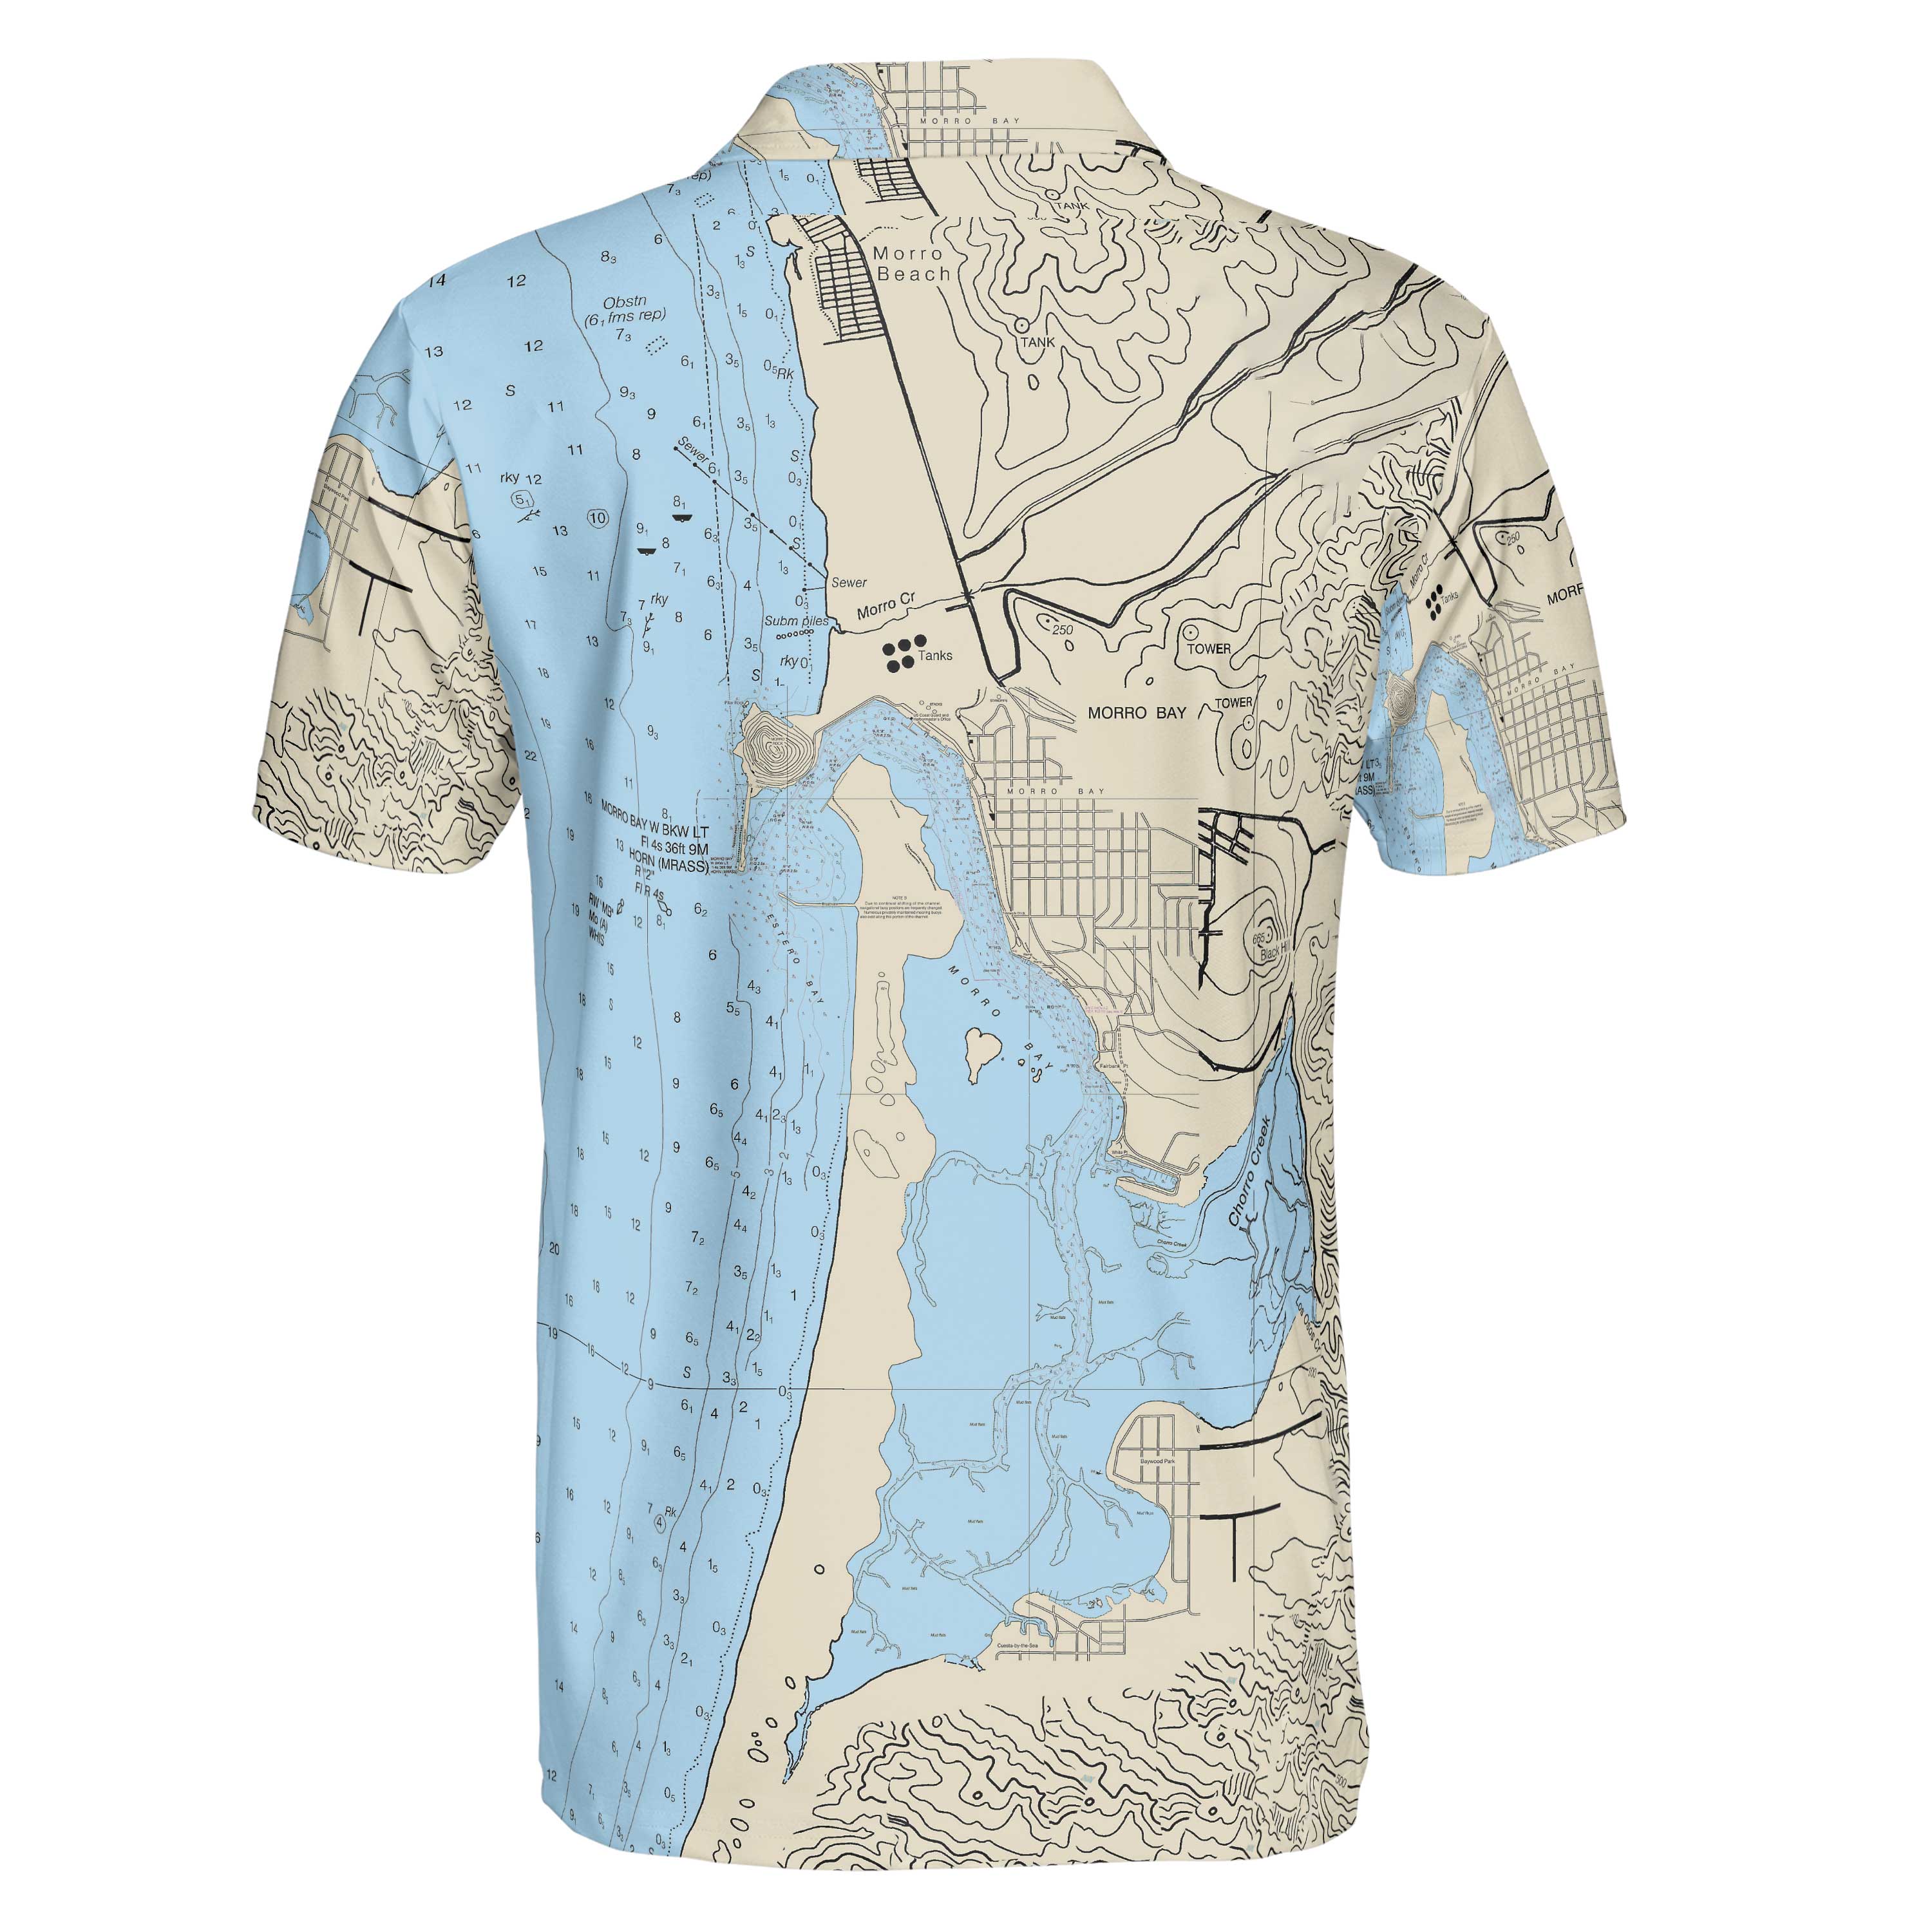 The Morrow Bay Navigator Polo Shirt